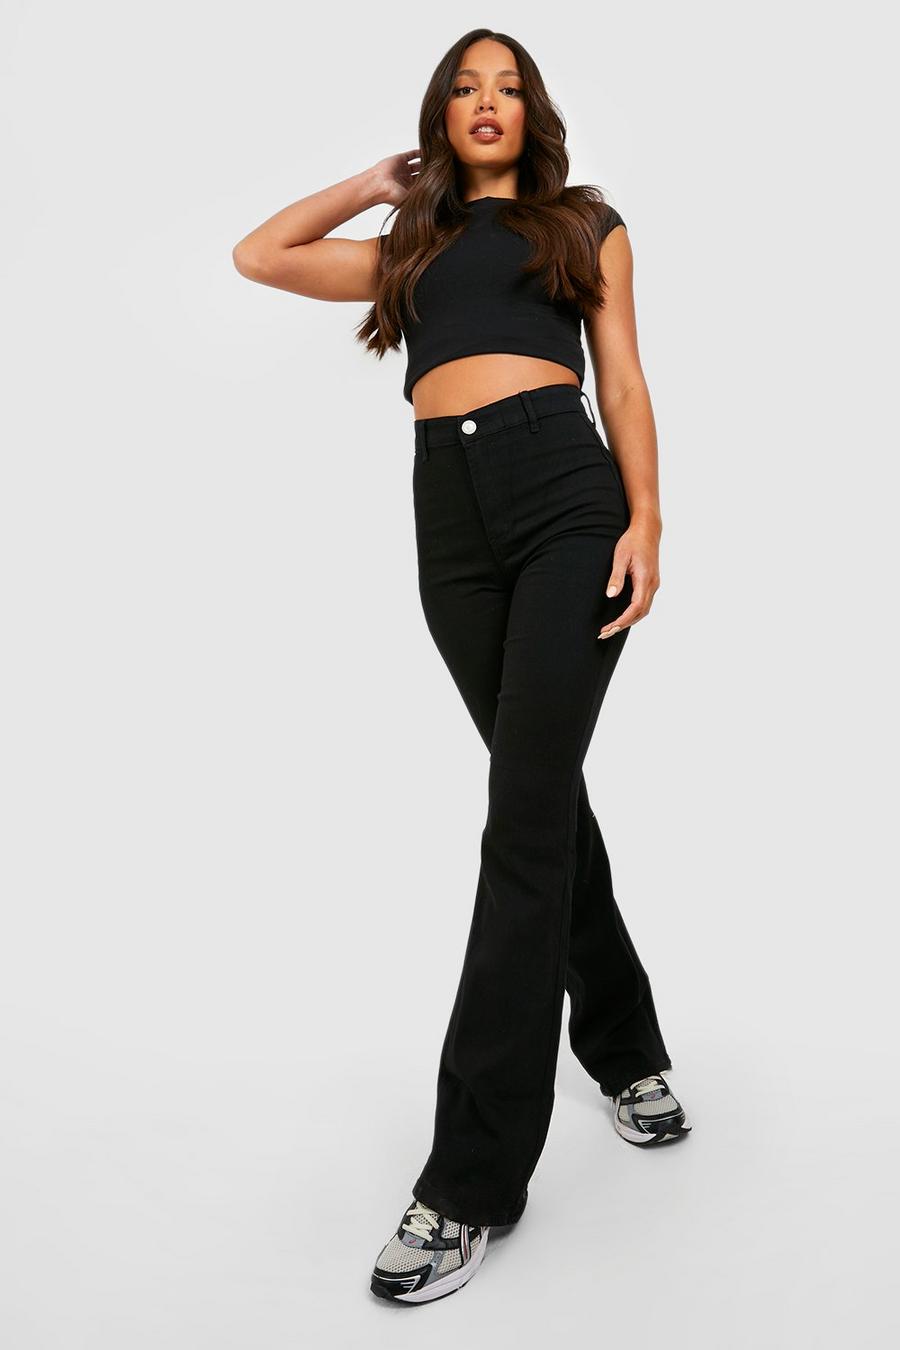 שחור black סקיני ג'ינס High Waist מתרחב לנשים גבוהות